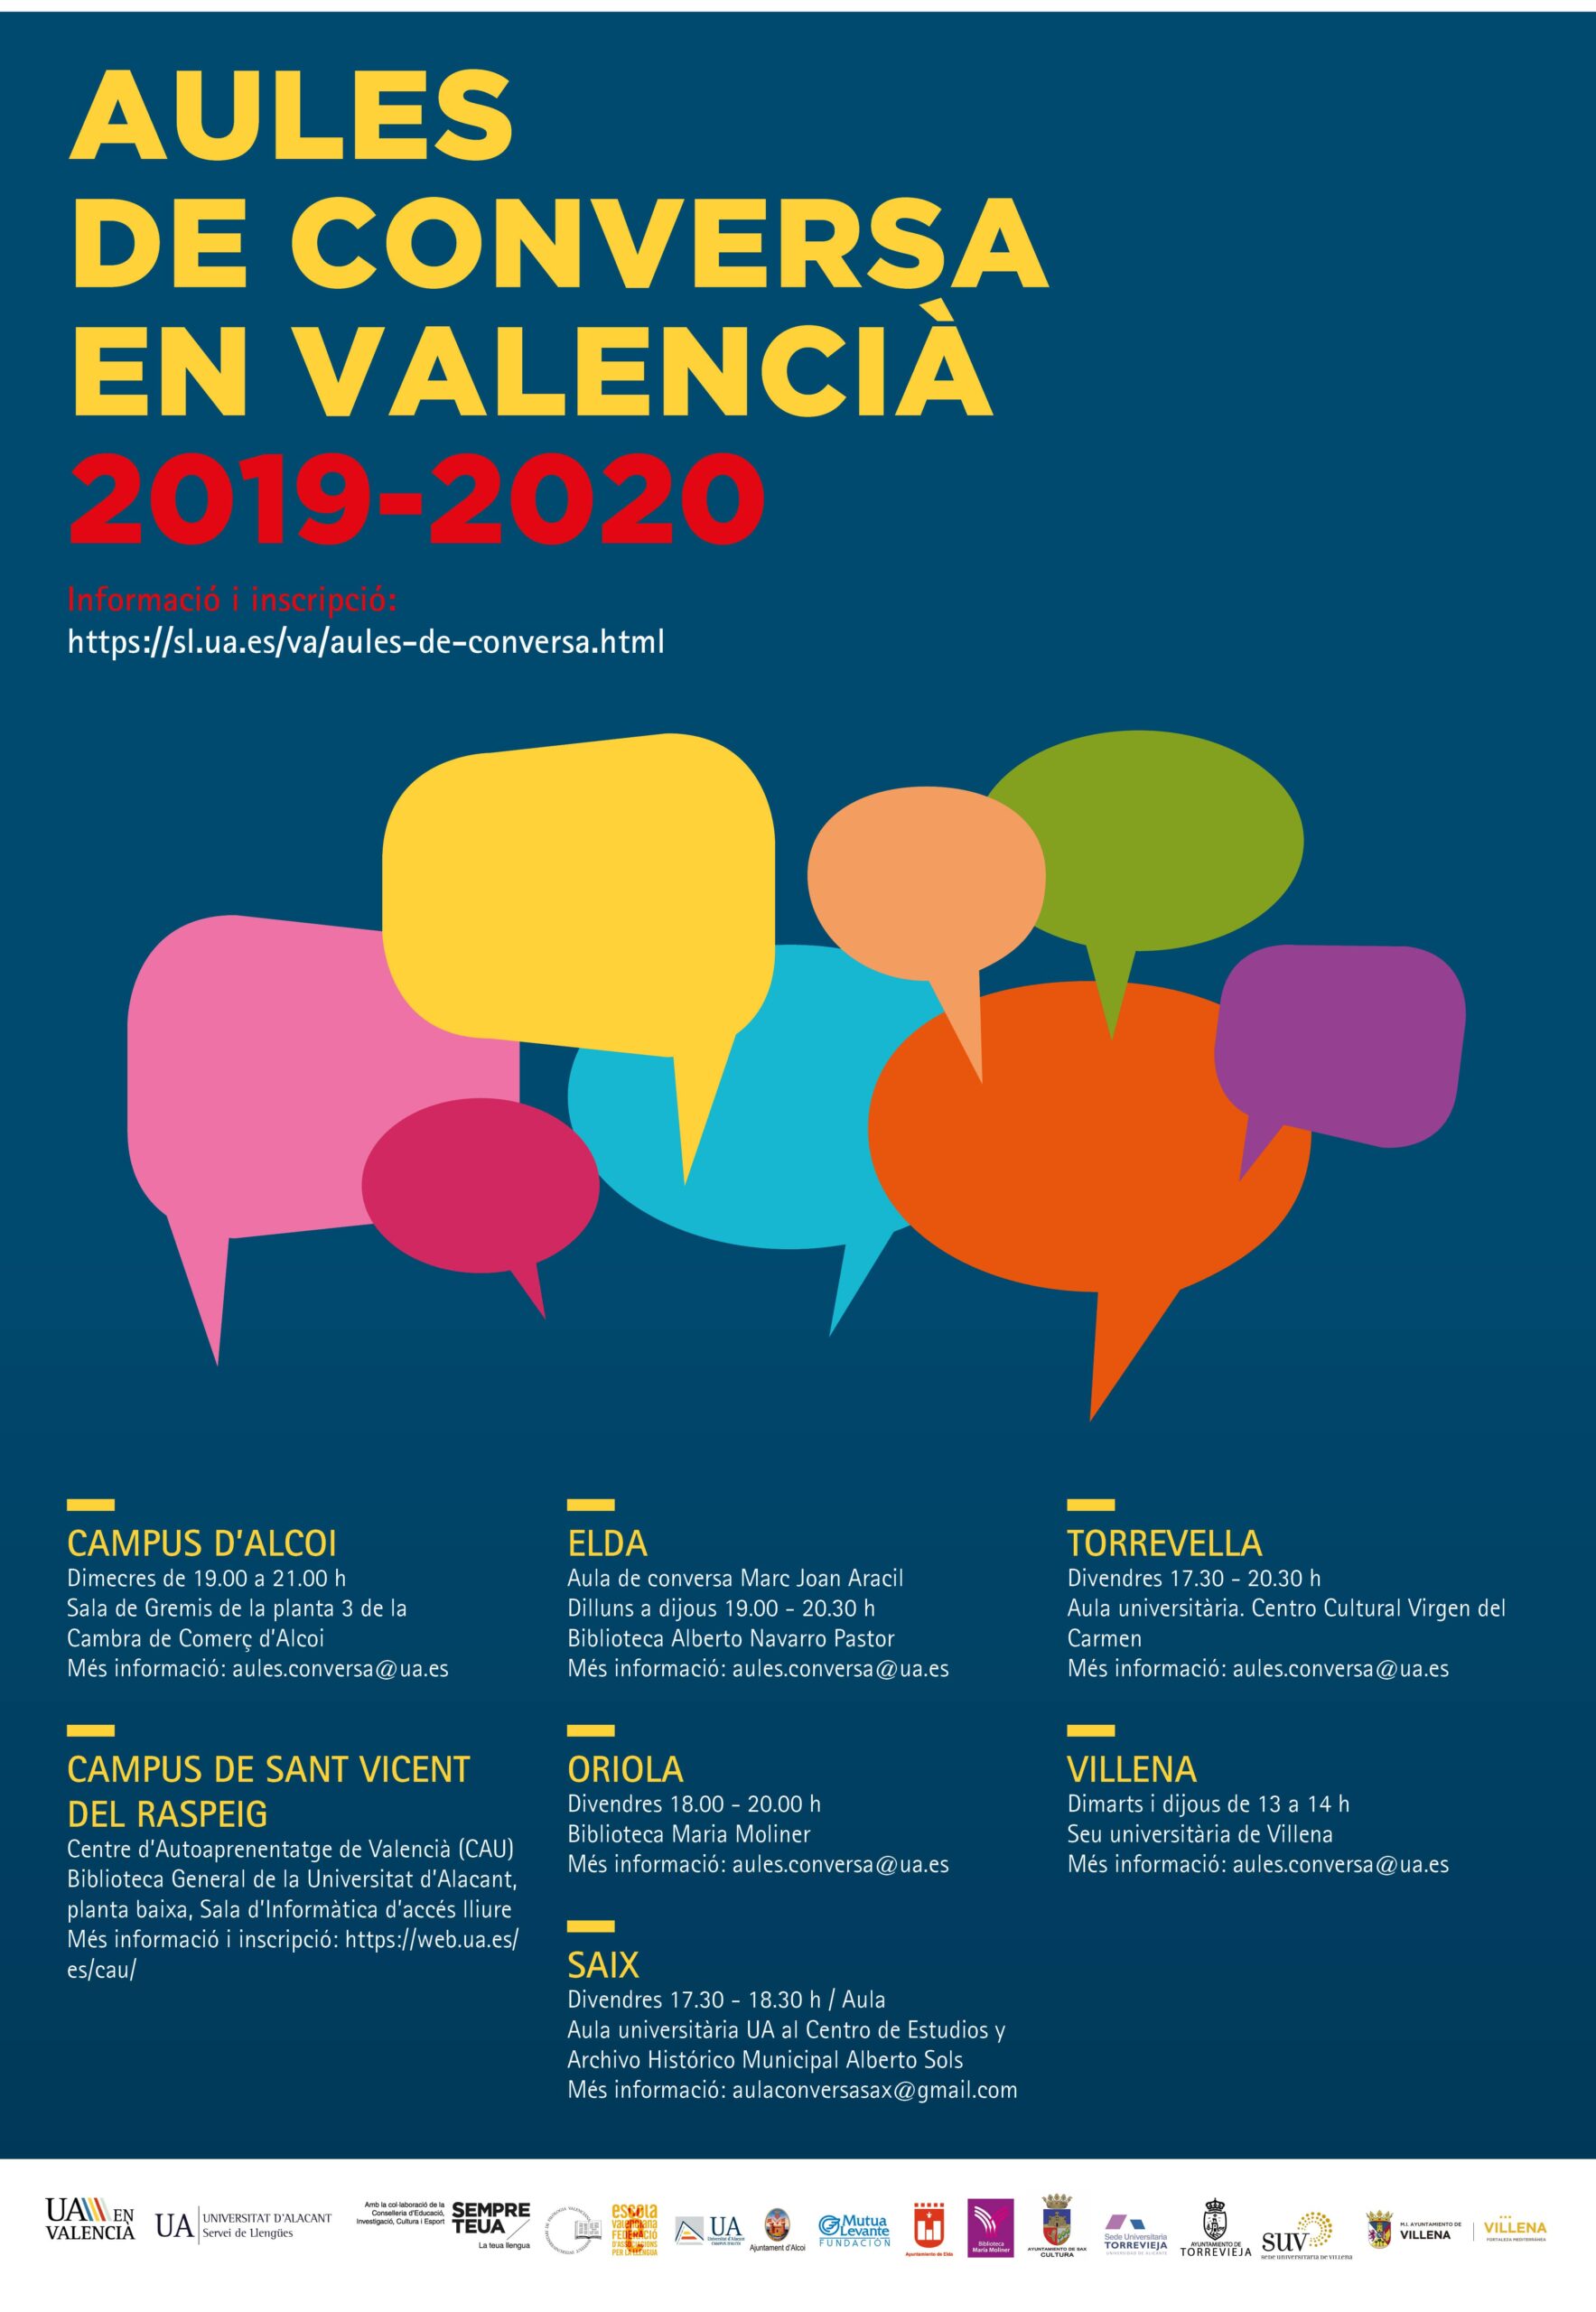 La UA pone en marcha un programa gratuito de Aulas de Conversación en valenciano en 7 municipios de la provincia